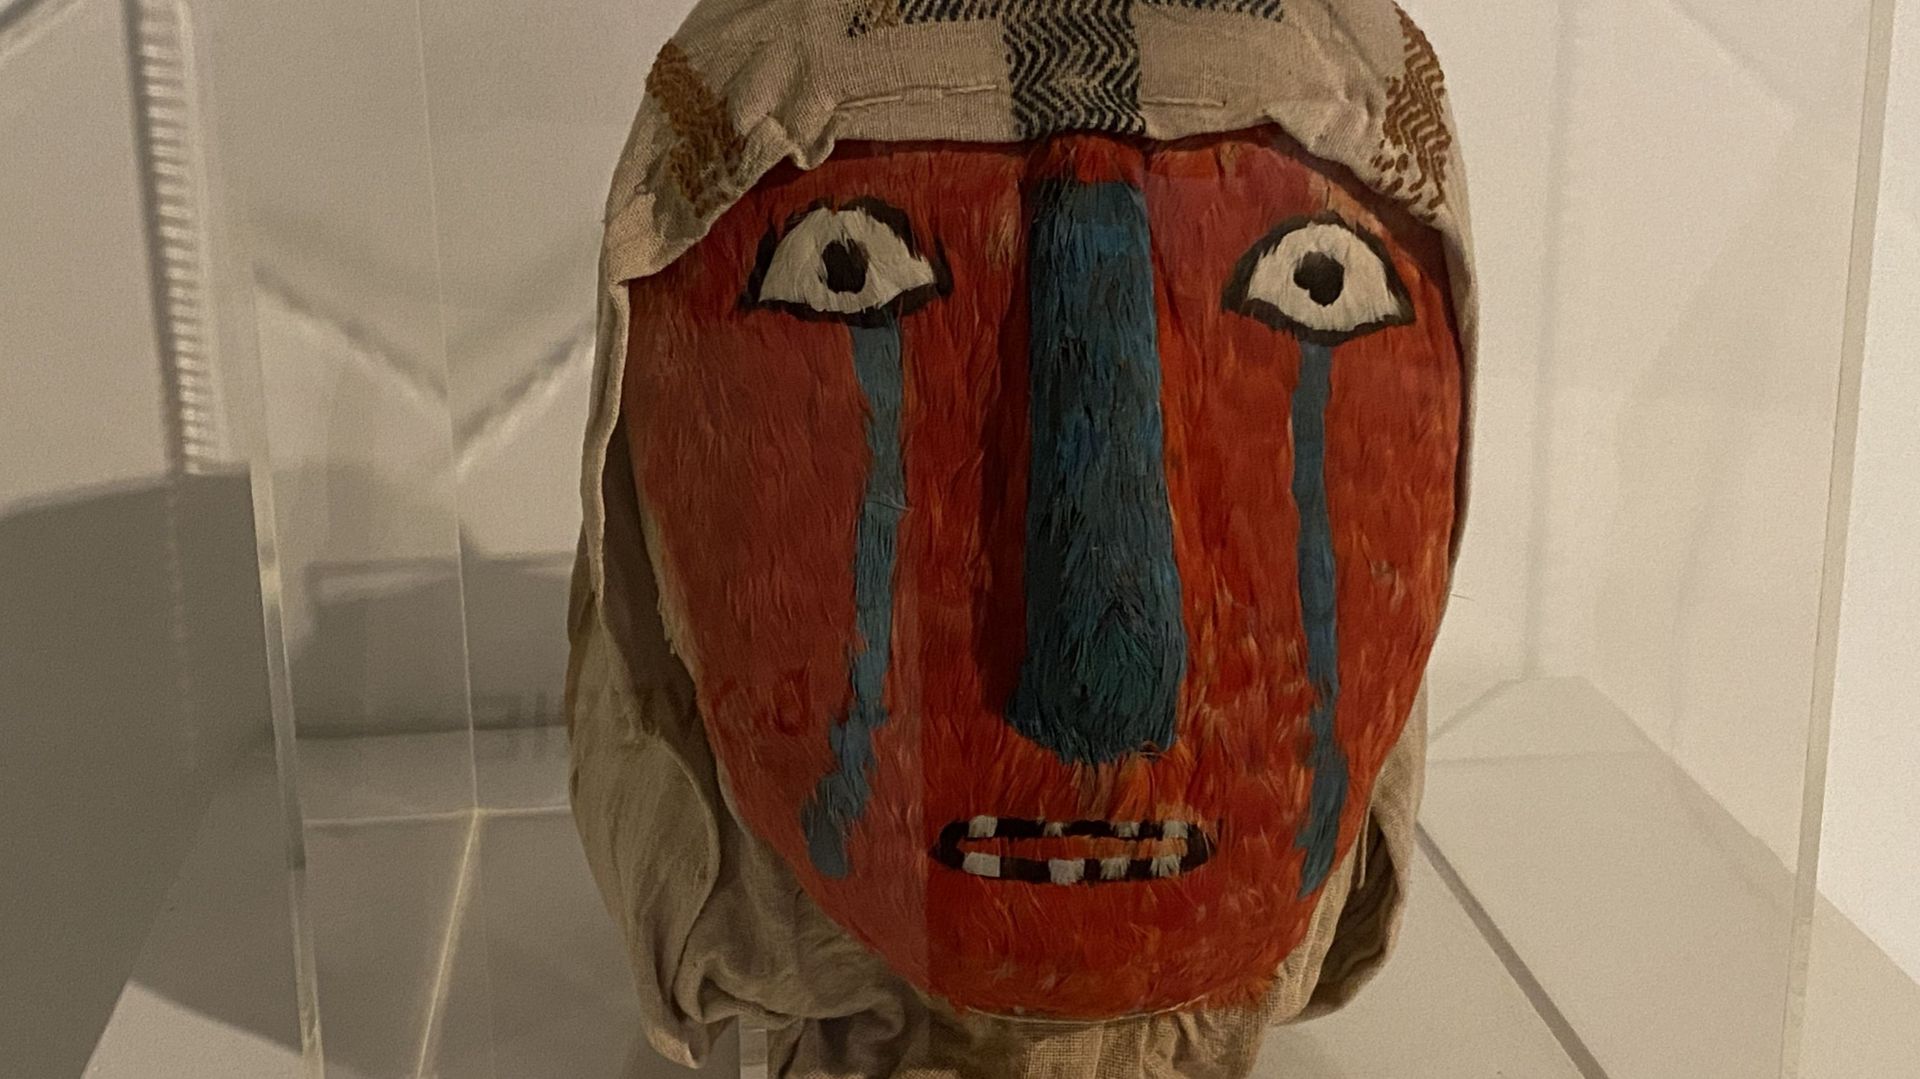 Ce masque funéraire péruvien n’avait encore jamais été montré publiquement.